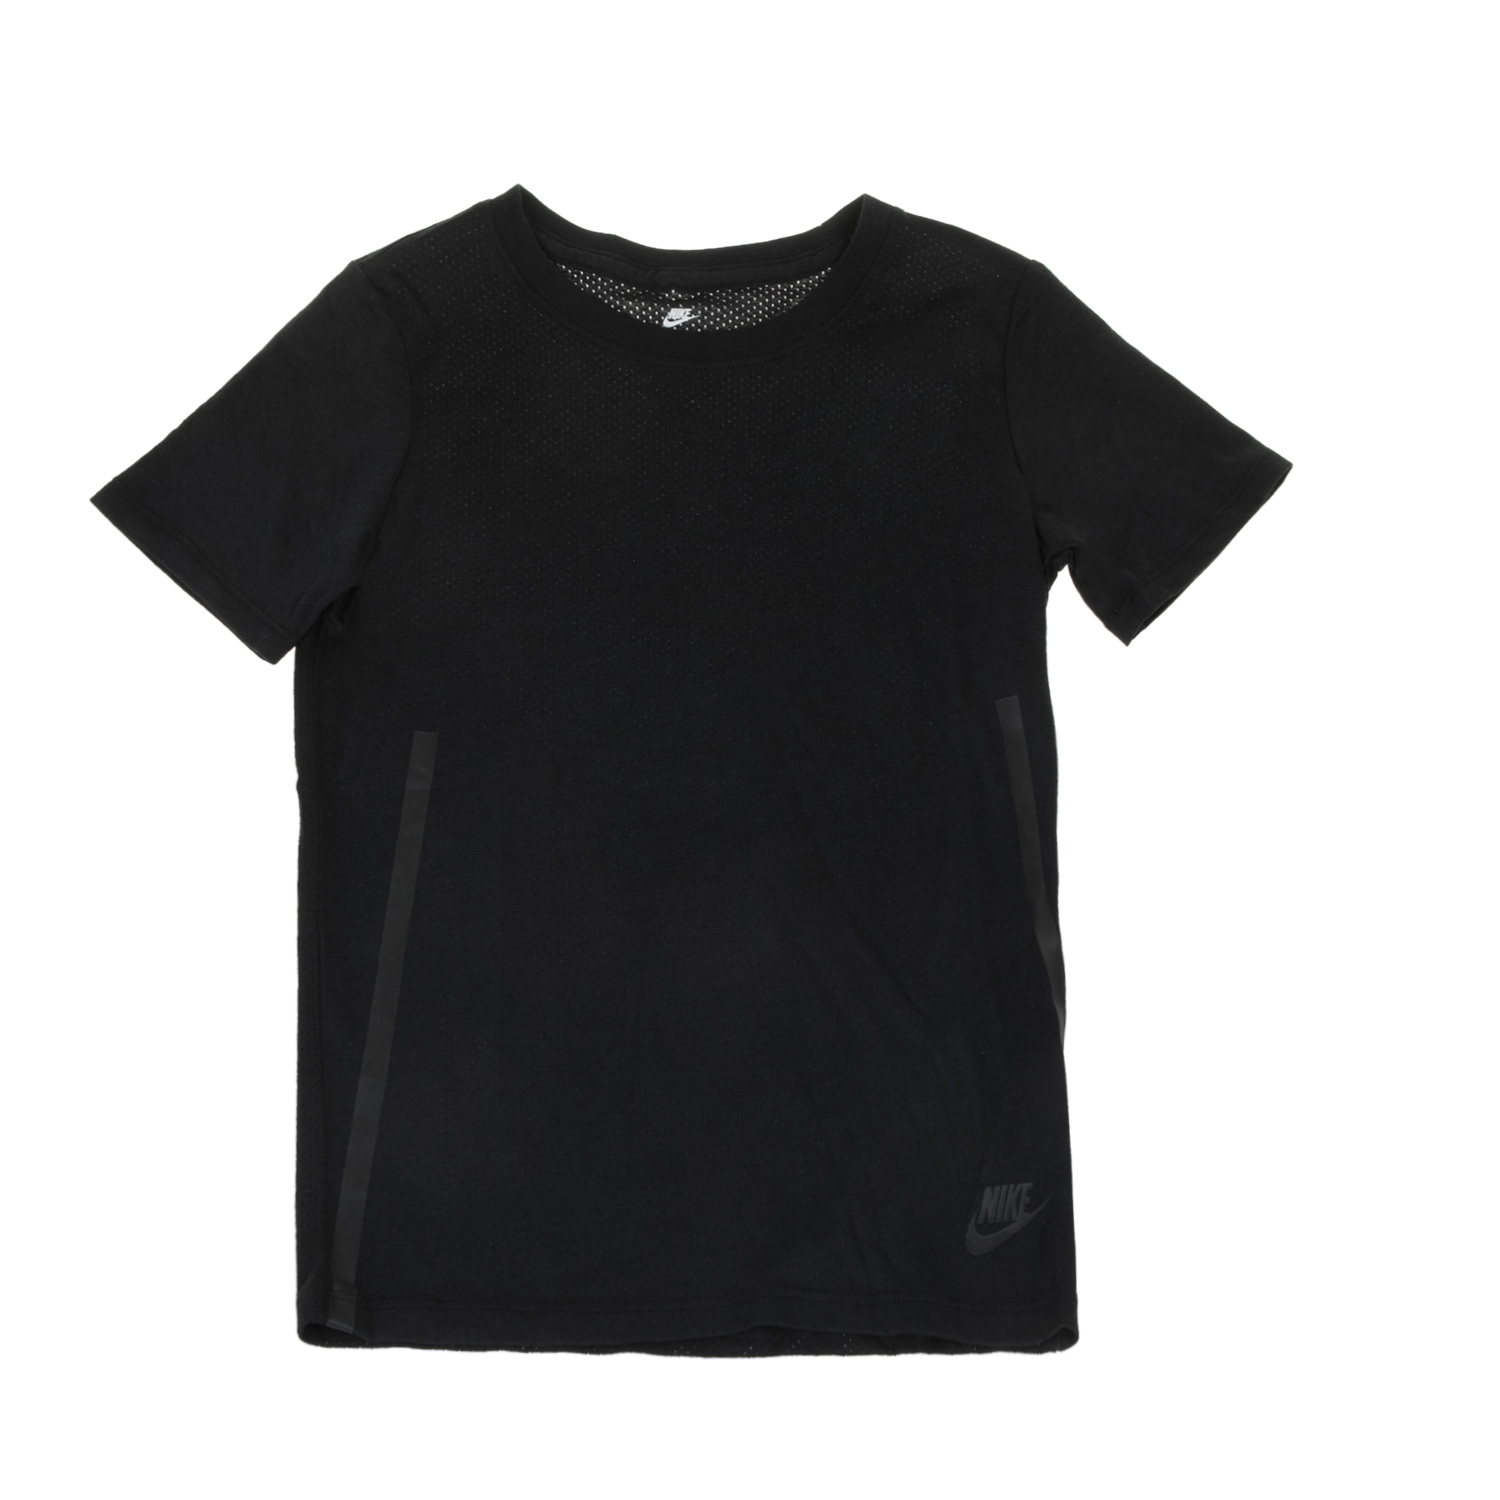 Παιδικά/Boys/Ρούχα/Αθλητικά NIKE - Αγορίστικη μπλούζα Nike TEE SS TECH μαύρη